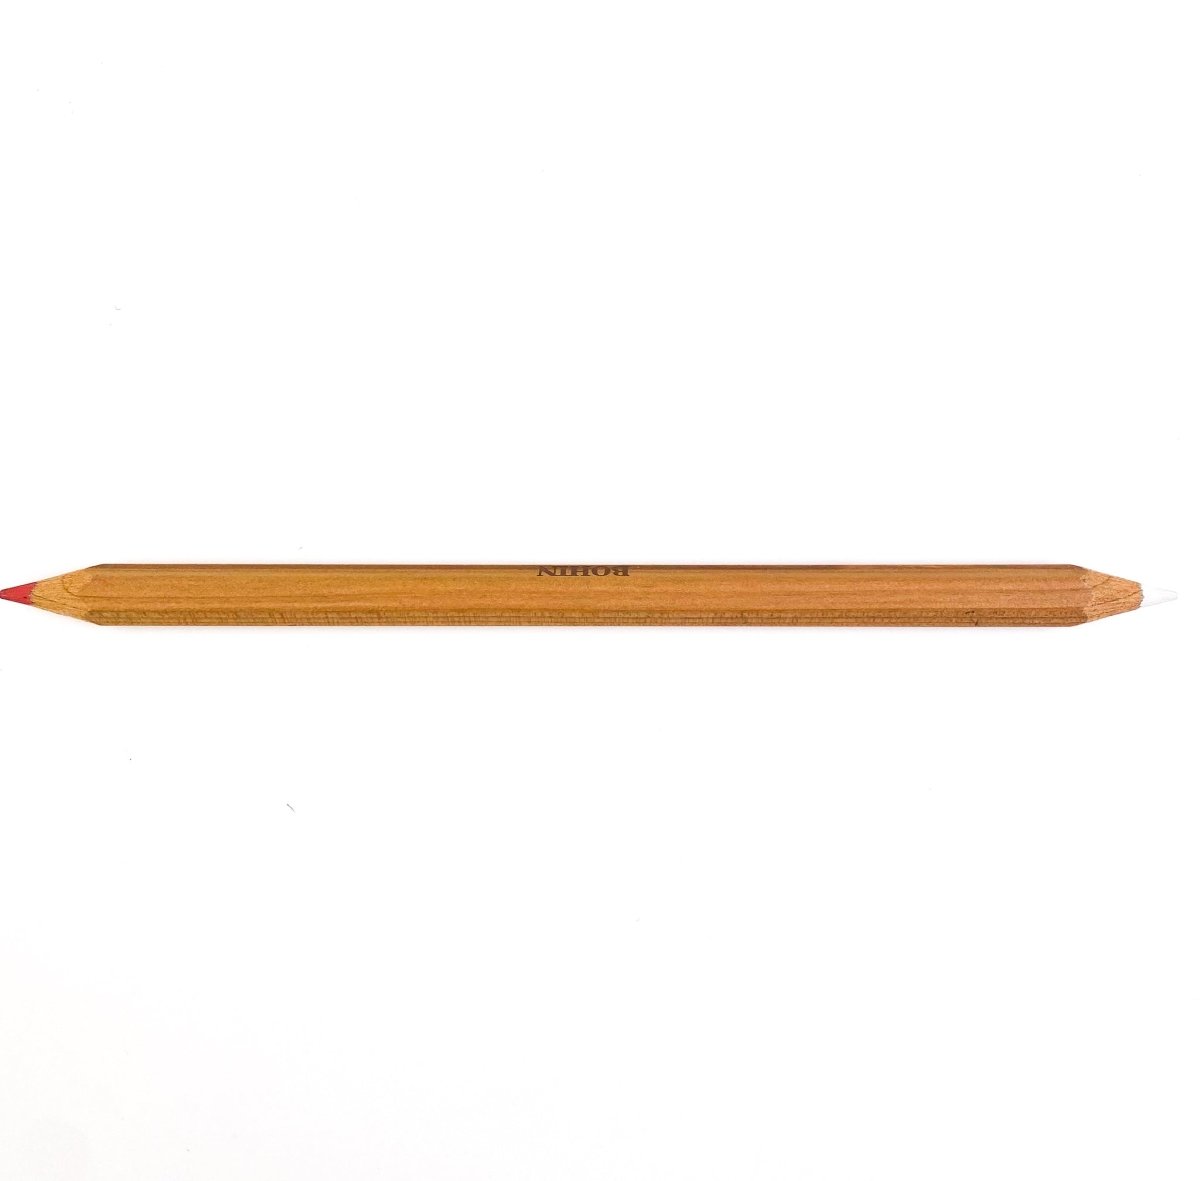 Bohin - Chalk Pencil